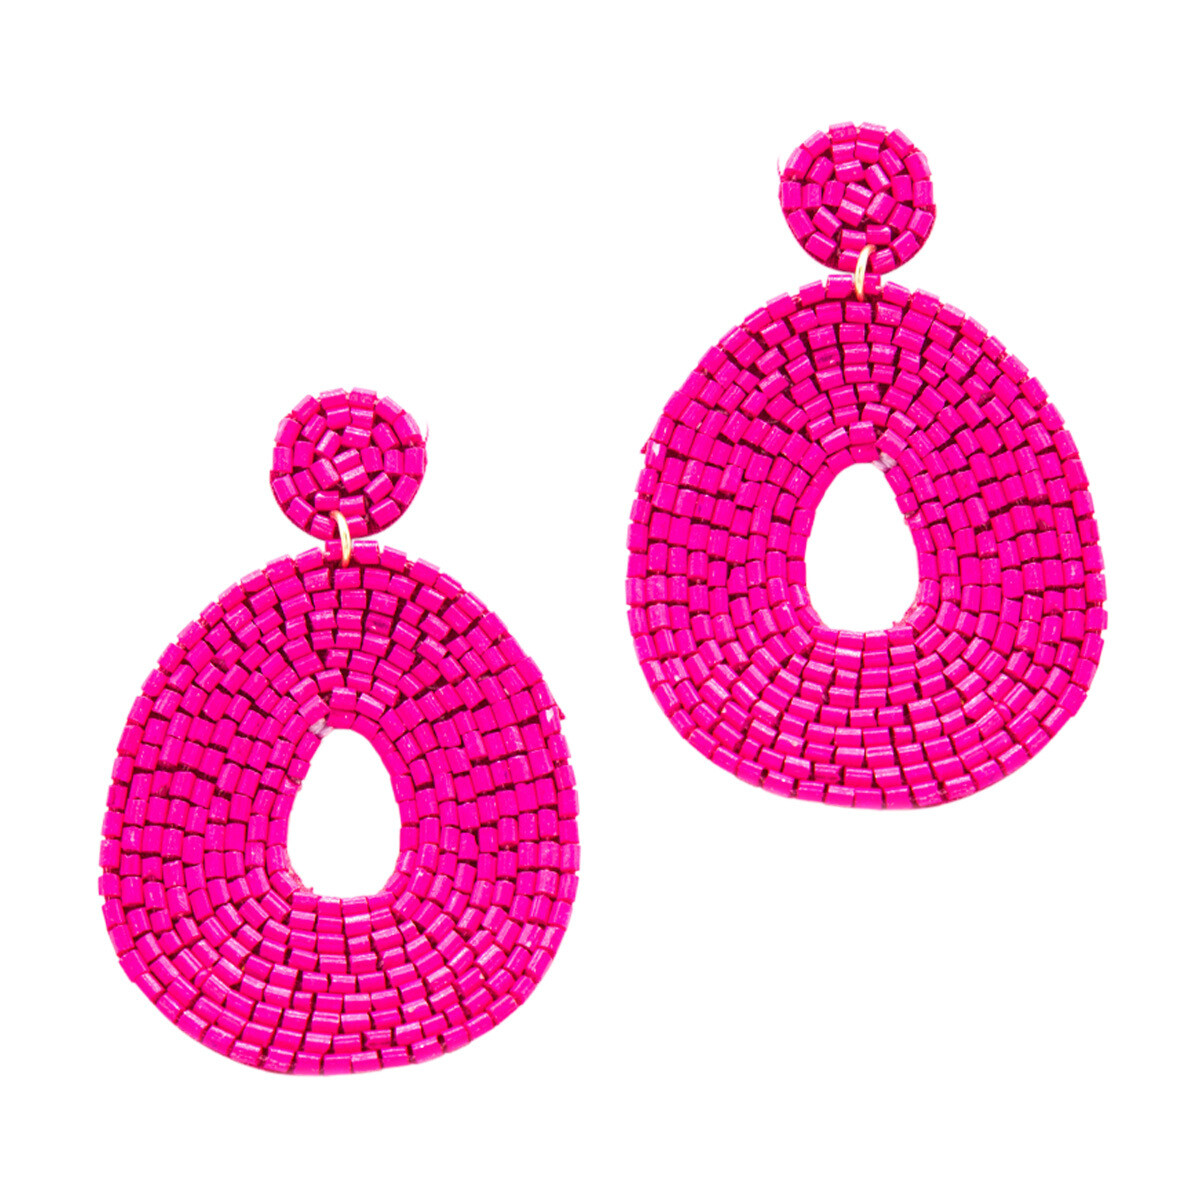 Hot Pink Caroline Earrings